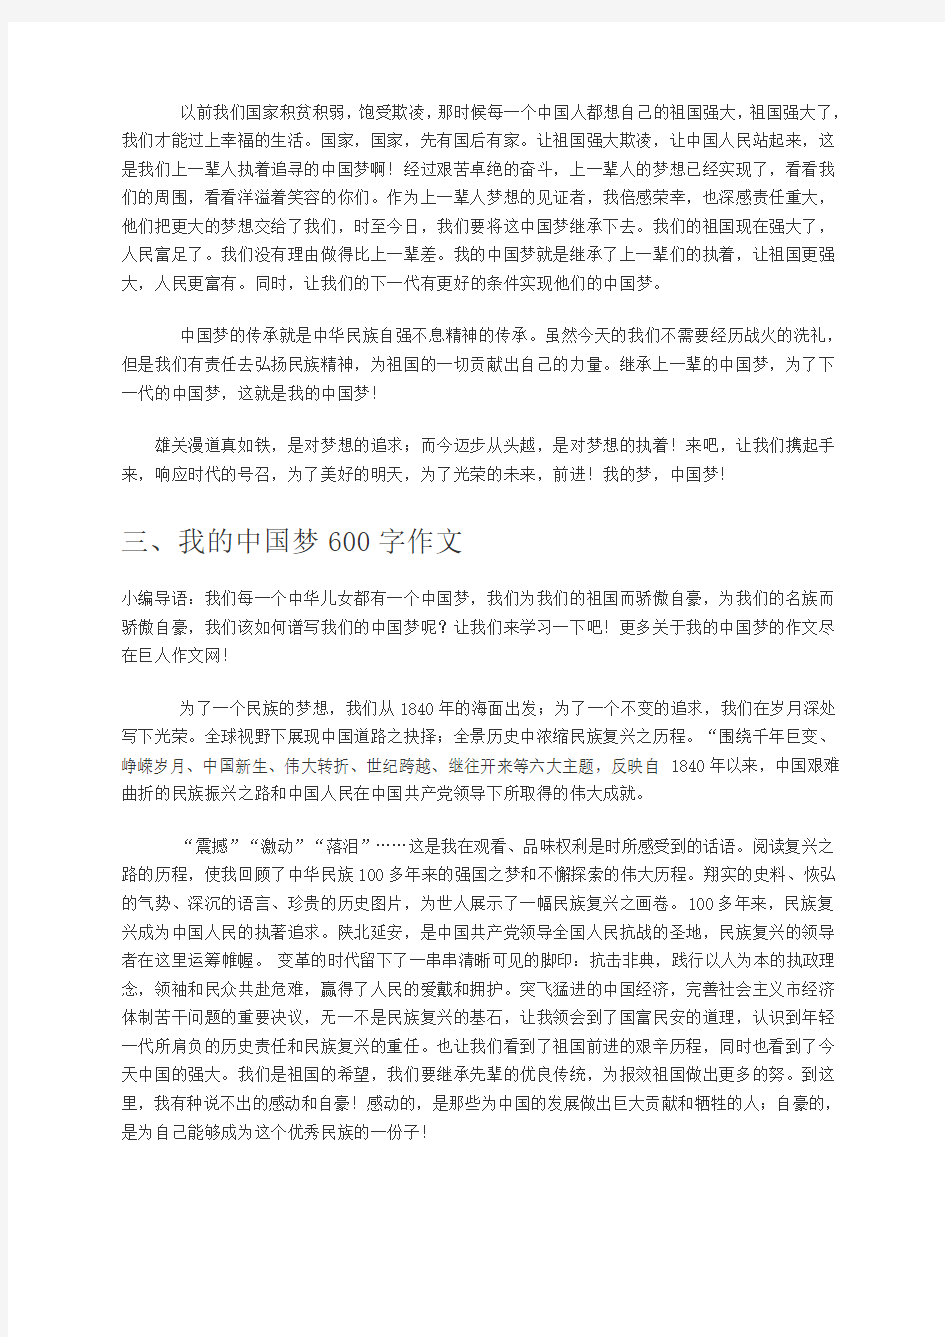 中国梦  我的梦 征文、演讲稿  (共13篇)。